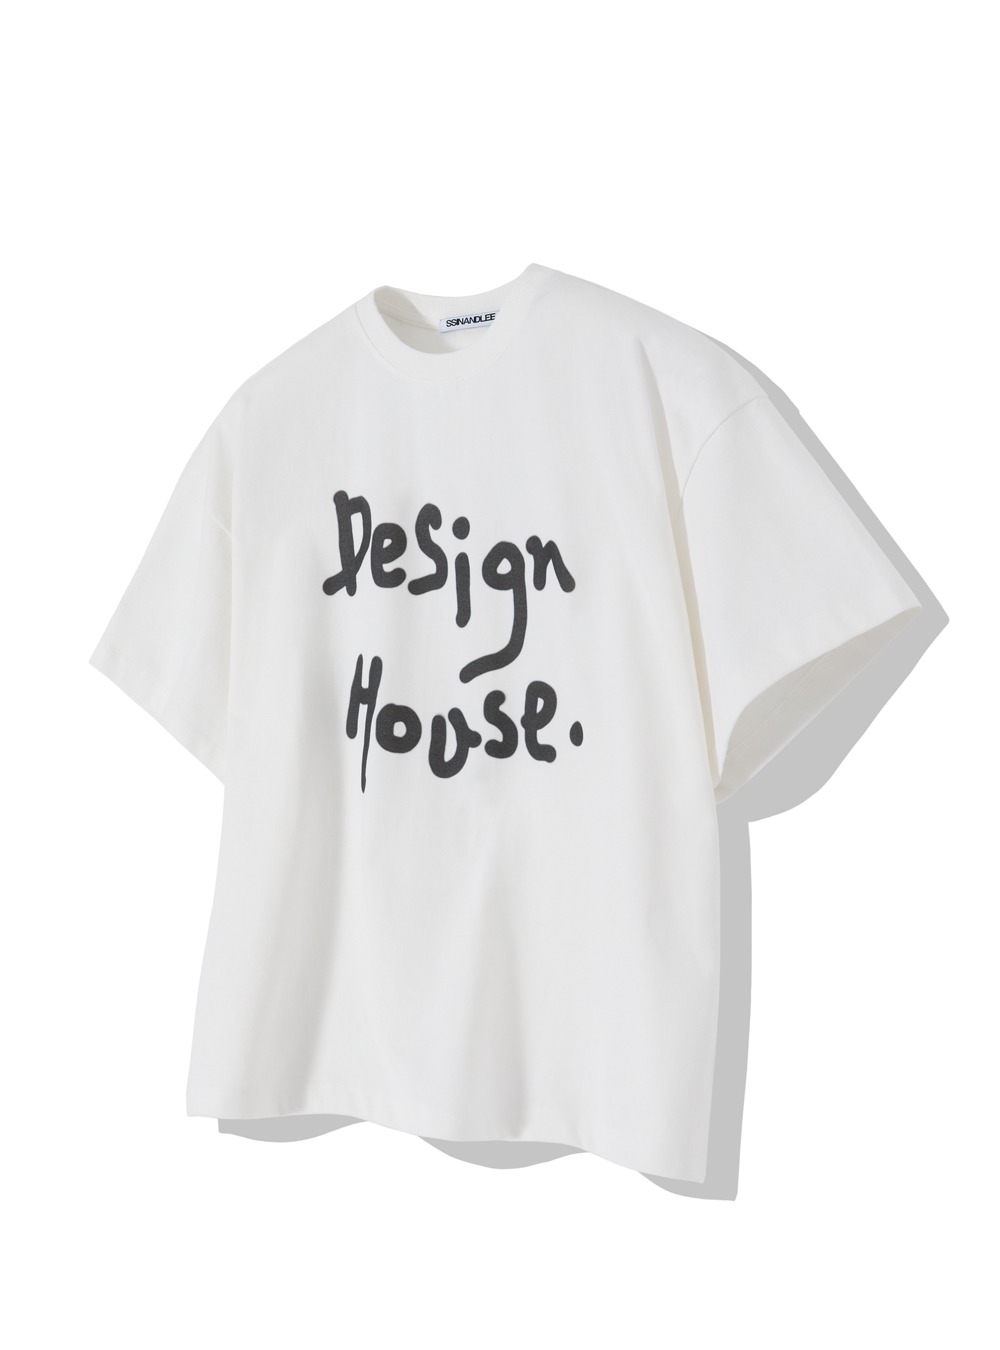 퓨어 디자인 하우스 티셔츠 화이트Pure design house t-shirt white